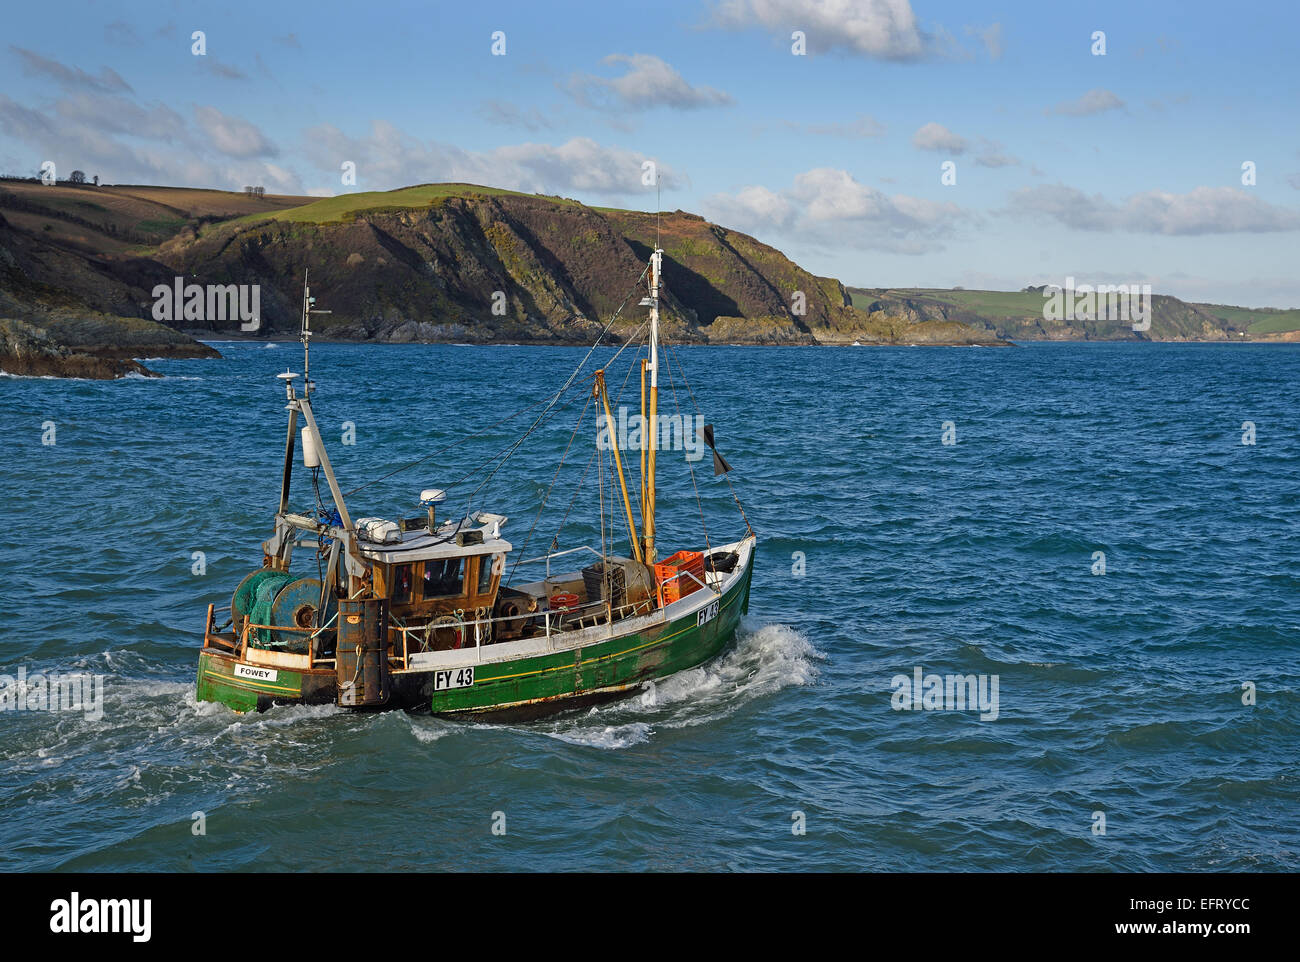 Fowey registered trawler, Lenten Rose FY43 leaving Mevagissey, Cornwall, UK Stock Photo